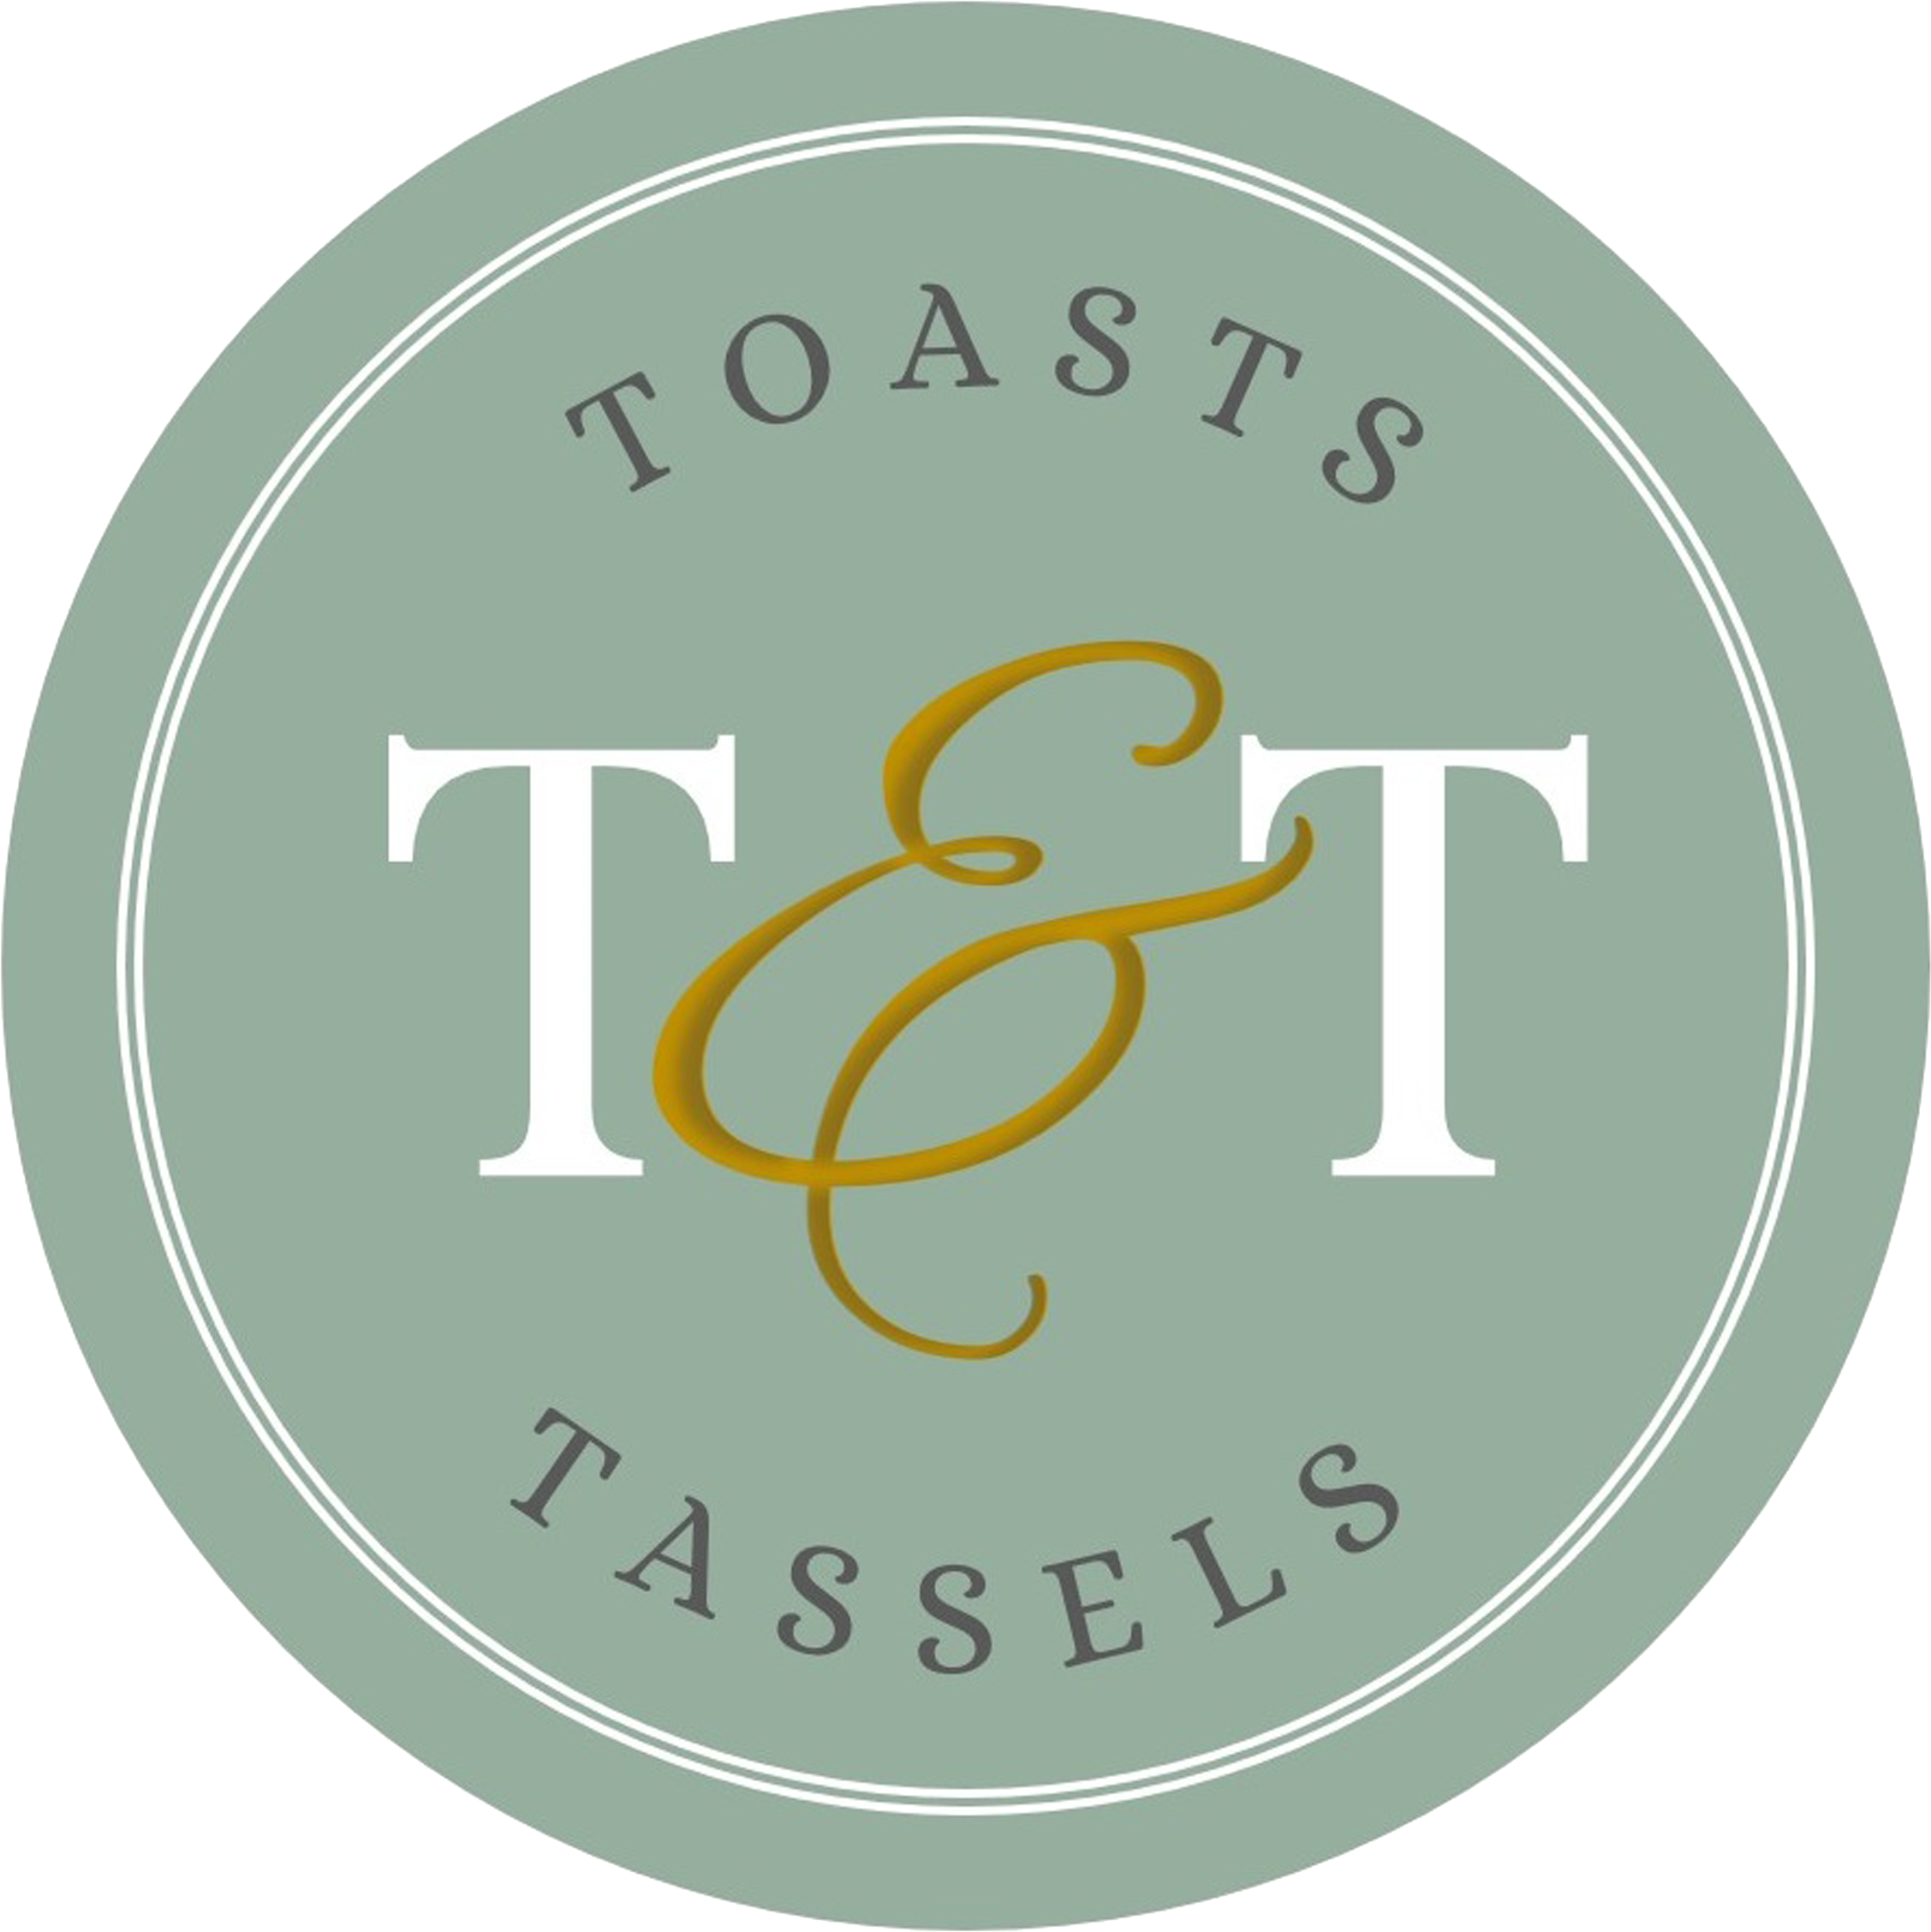 Toasts & Tassels